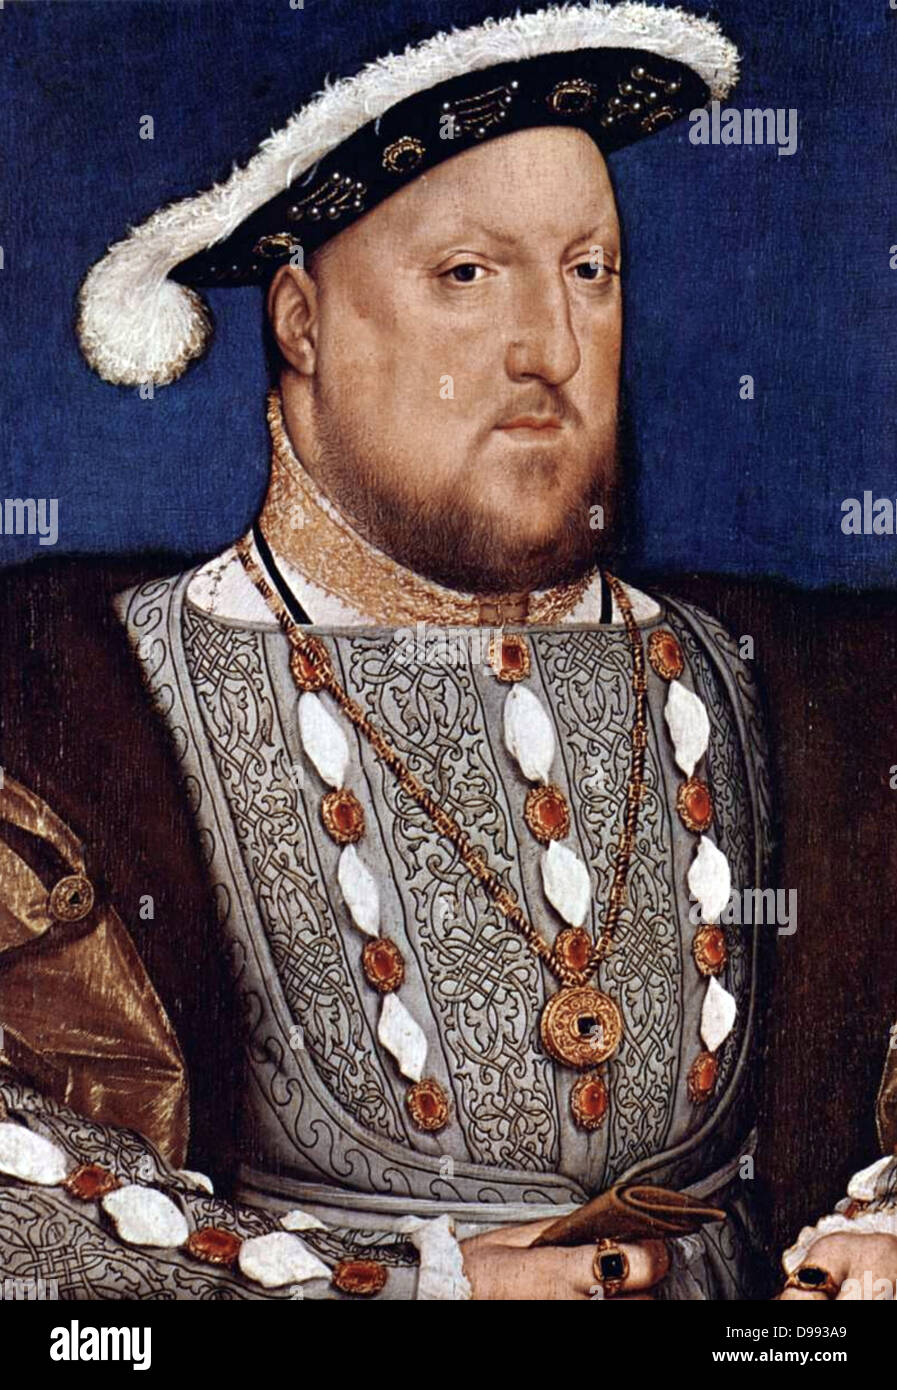 Portrait von Henry VIII. Von Hans Holbein Datum C. 1536/37. Henry VIII (28. Juni 1491 - 28. Januar 1547), war König von England ab 21. April 1509 bis zu seinem Tod. Er war auch Herr von Irland (später König von Irland) und Antragsteller dem Königreich Frankreich. Henry wa Stockfoto